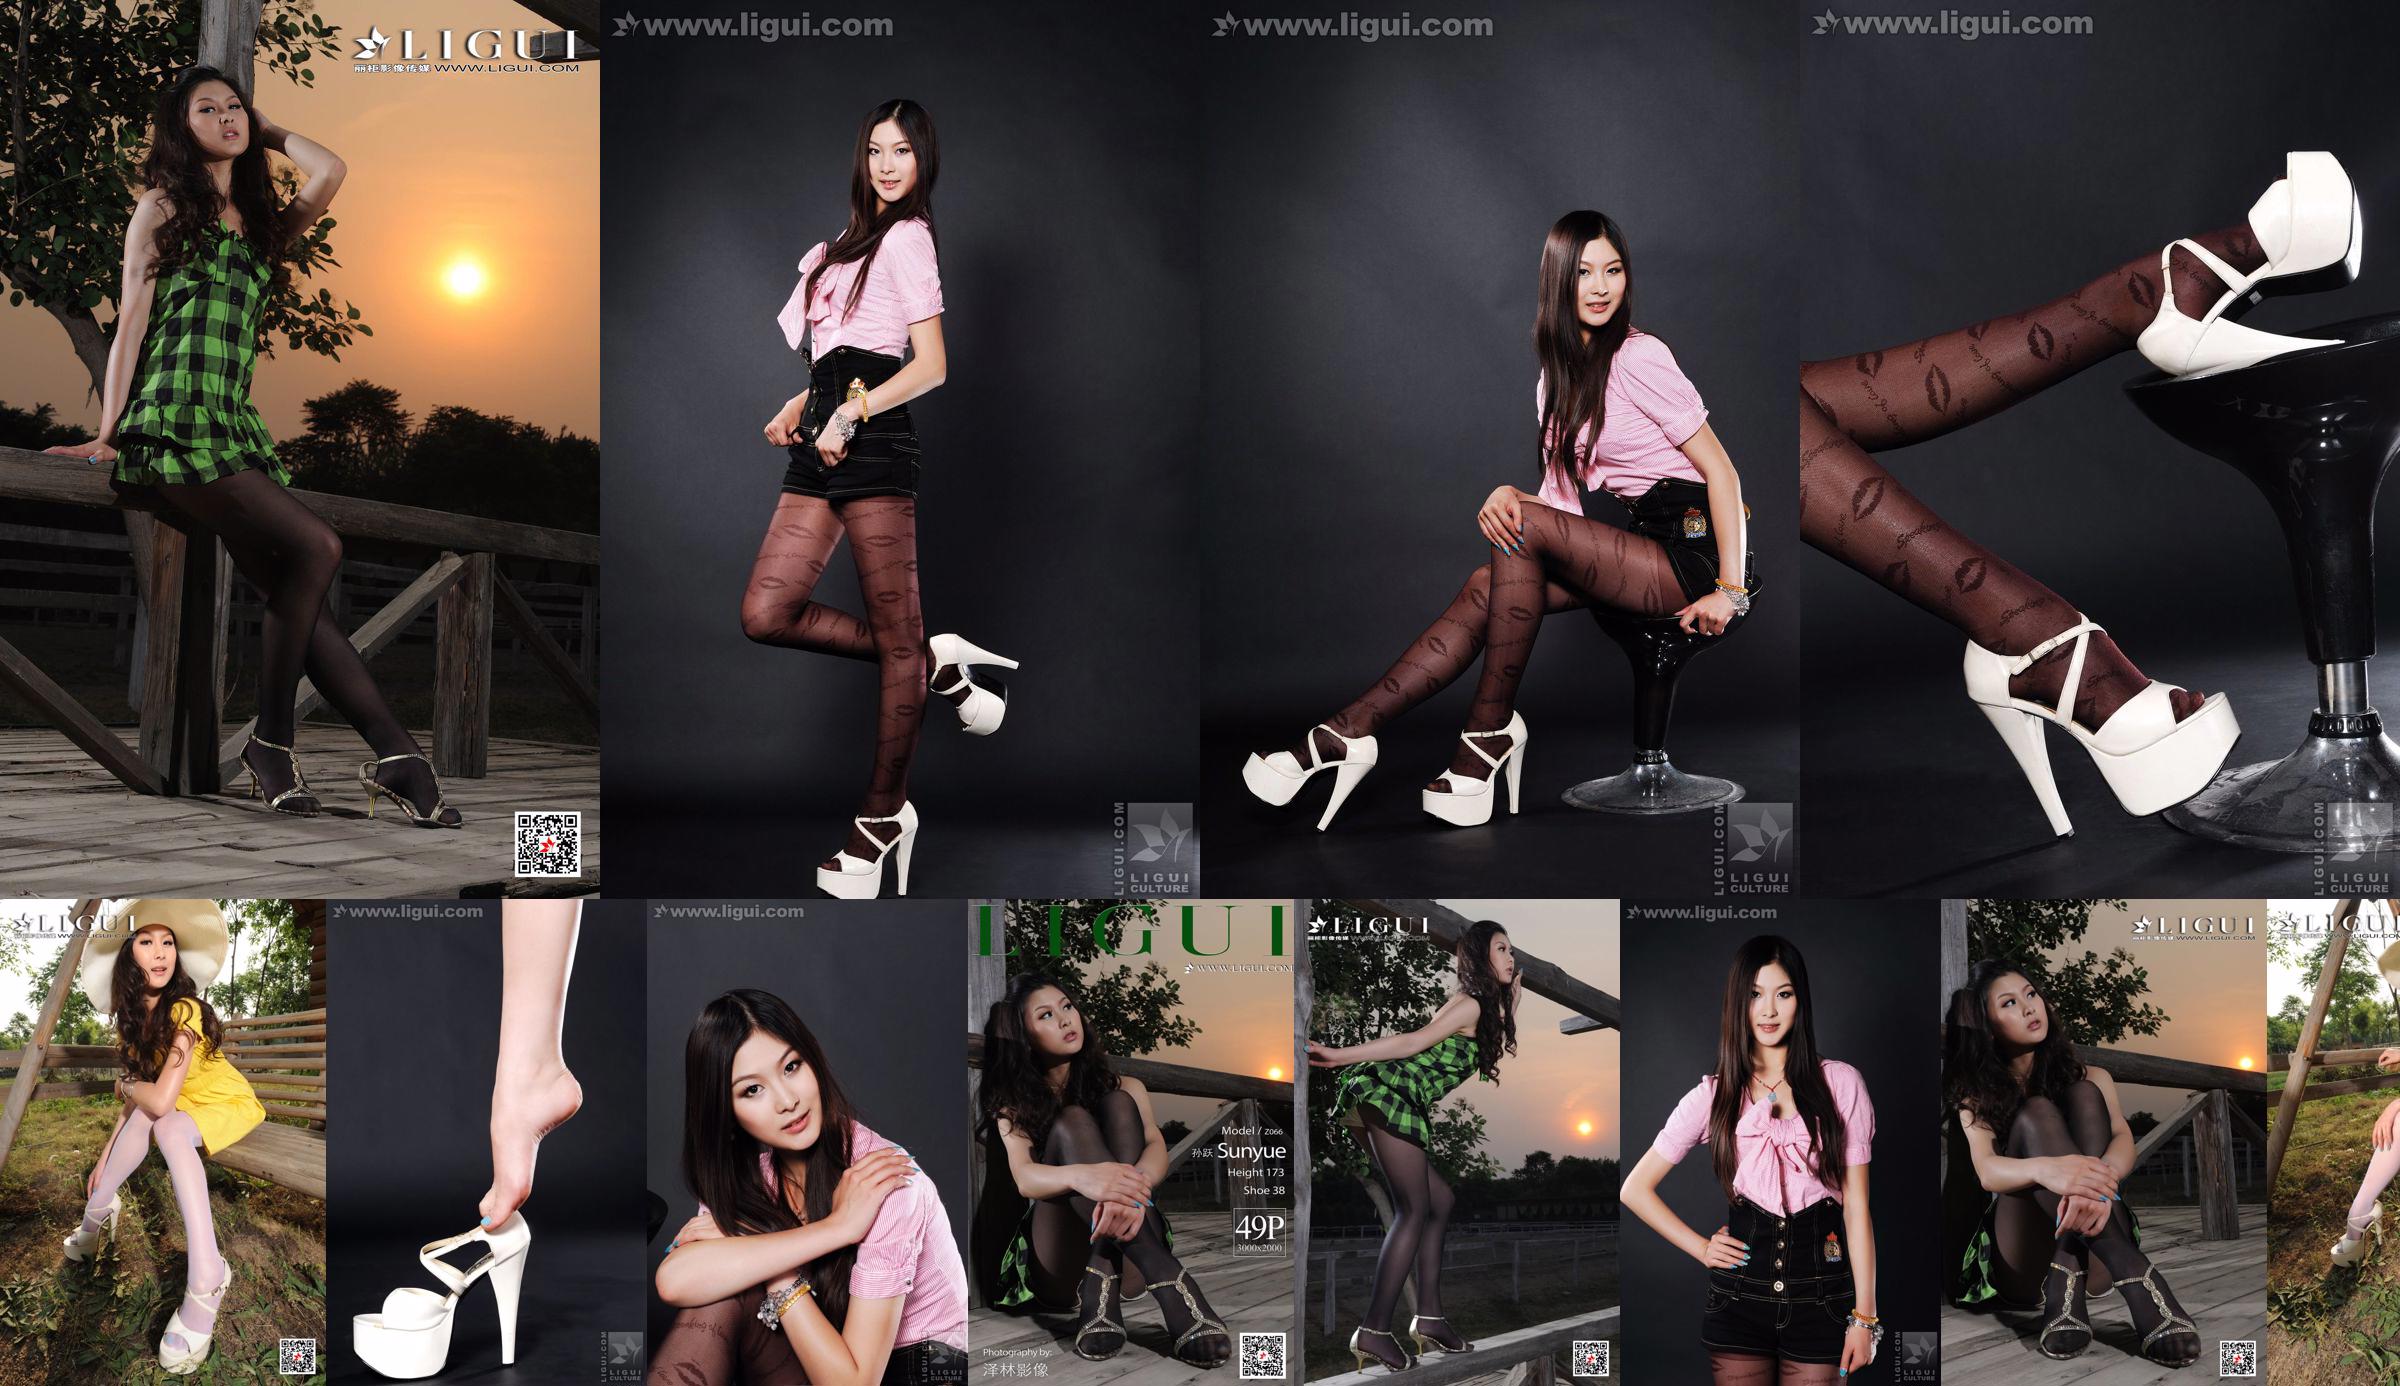 Người mẫu Sun Yue "Sexy and Glamorous Stockings" [丽 柜 LiGui] Ảnh Chân Dung Ngọc Bích và Chân Ngọc Xinh Đẹp No.42c500 Trang 27